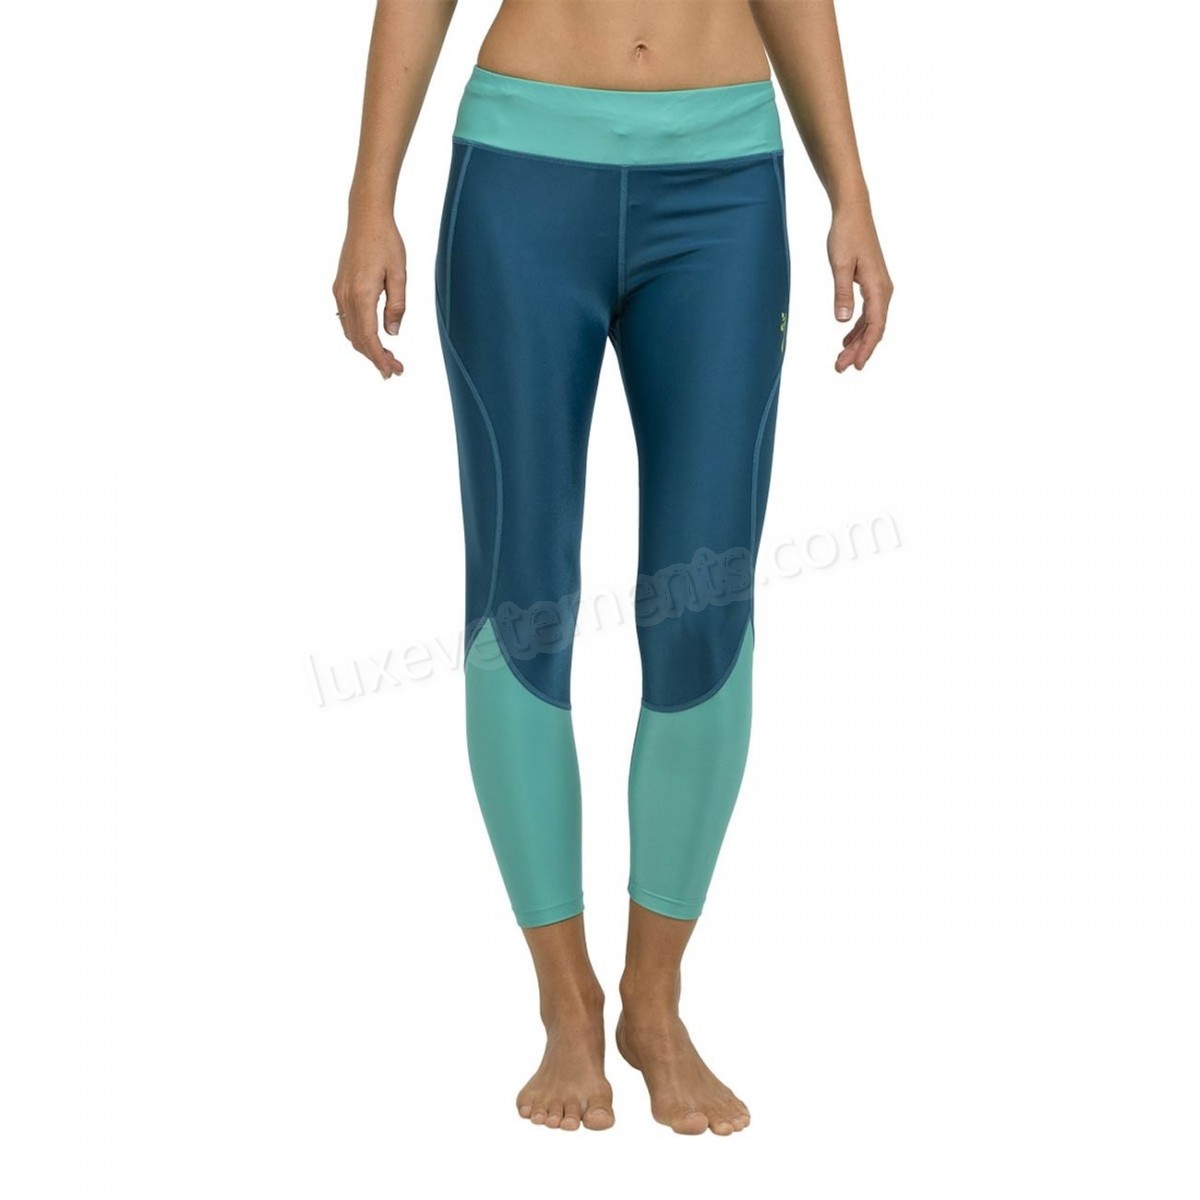 Oxbow-Yoga femme OXBOW Legging RITA Vente en ligne - -1